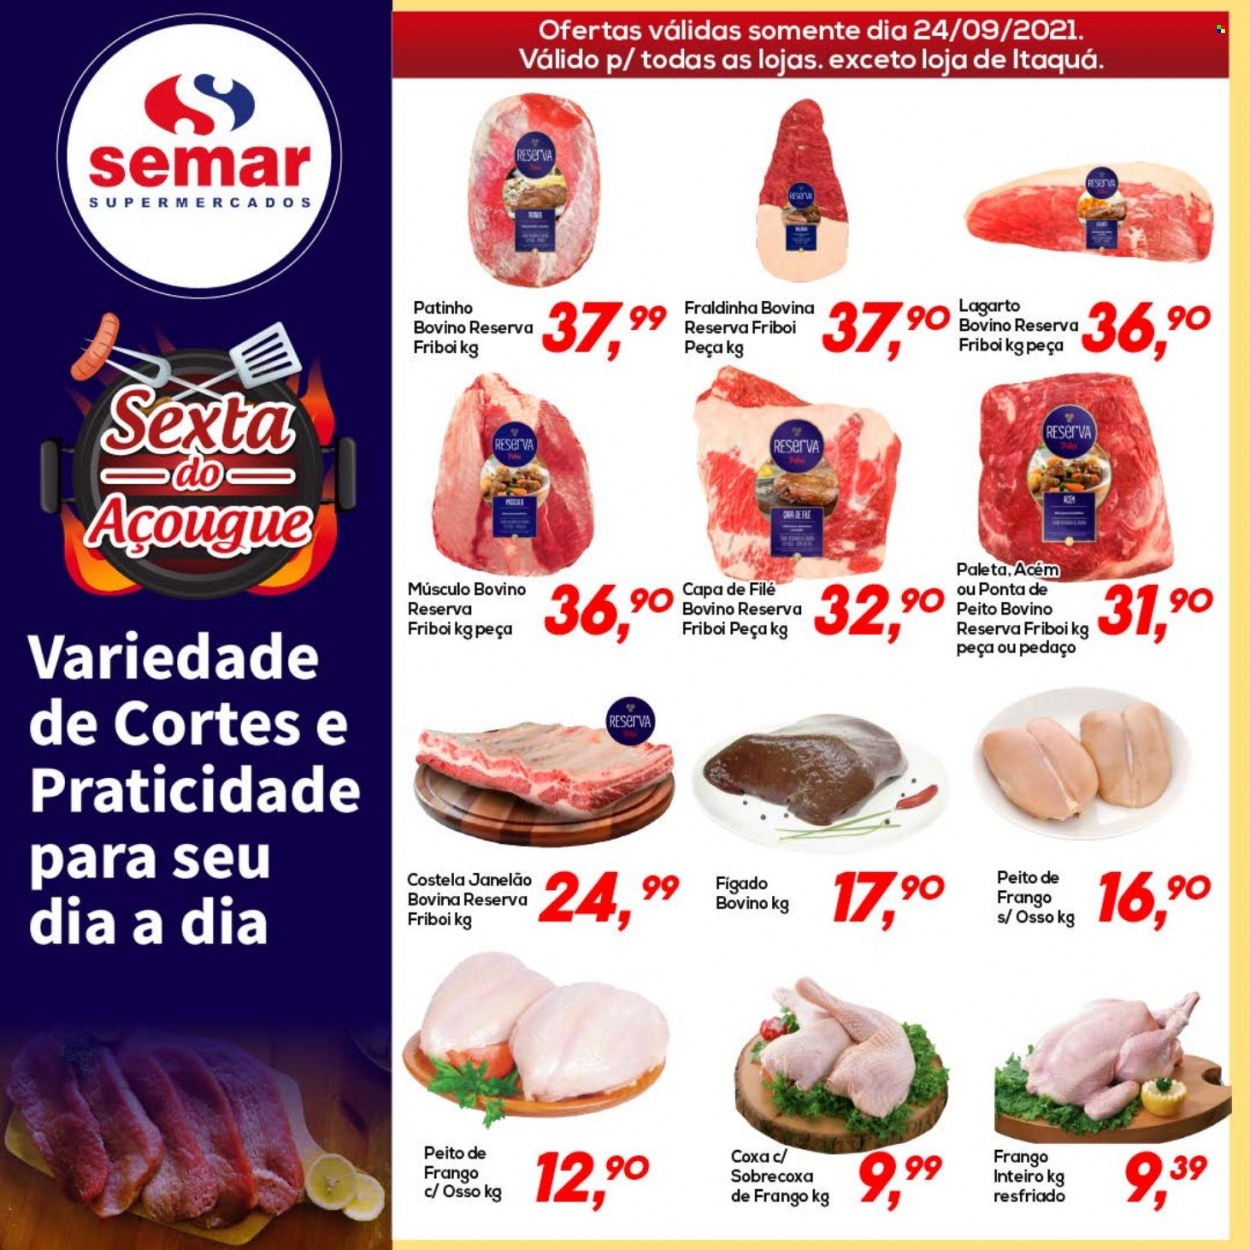 Encarte Semar Supermercados  - 24.09.2021 - 24.09.2021.